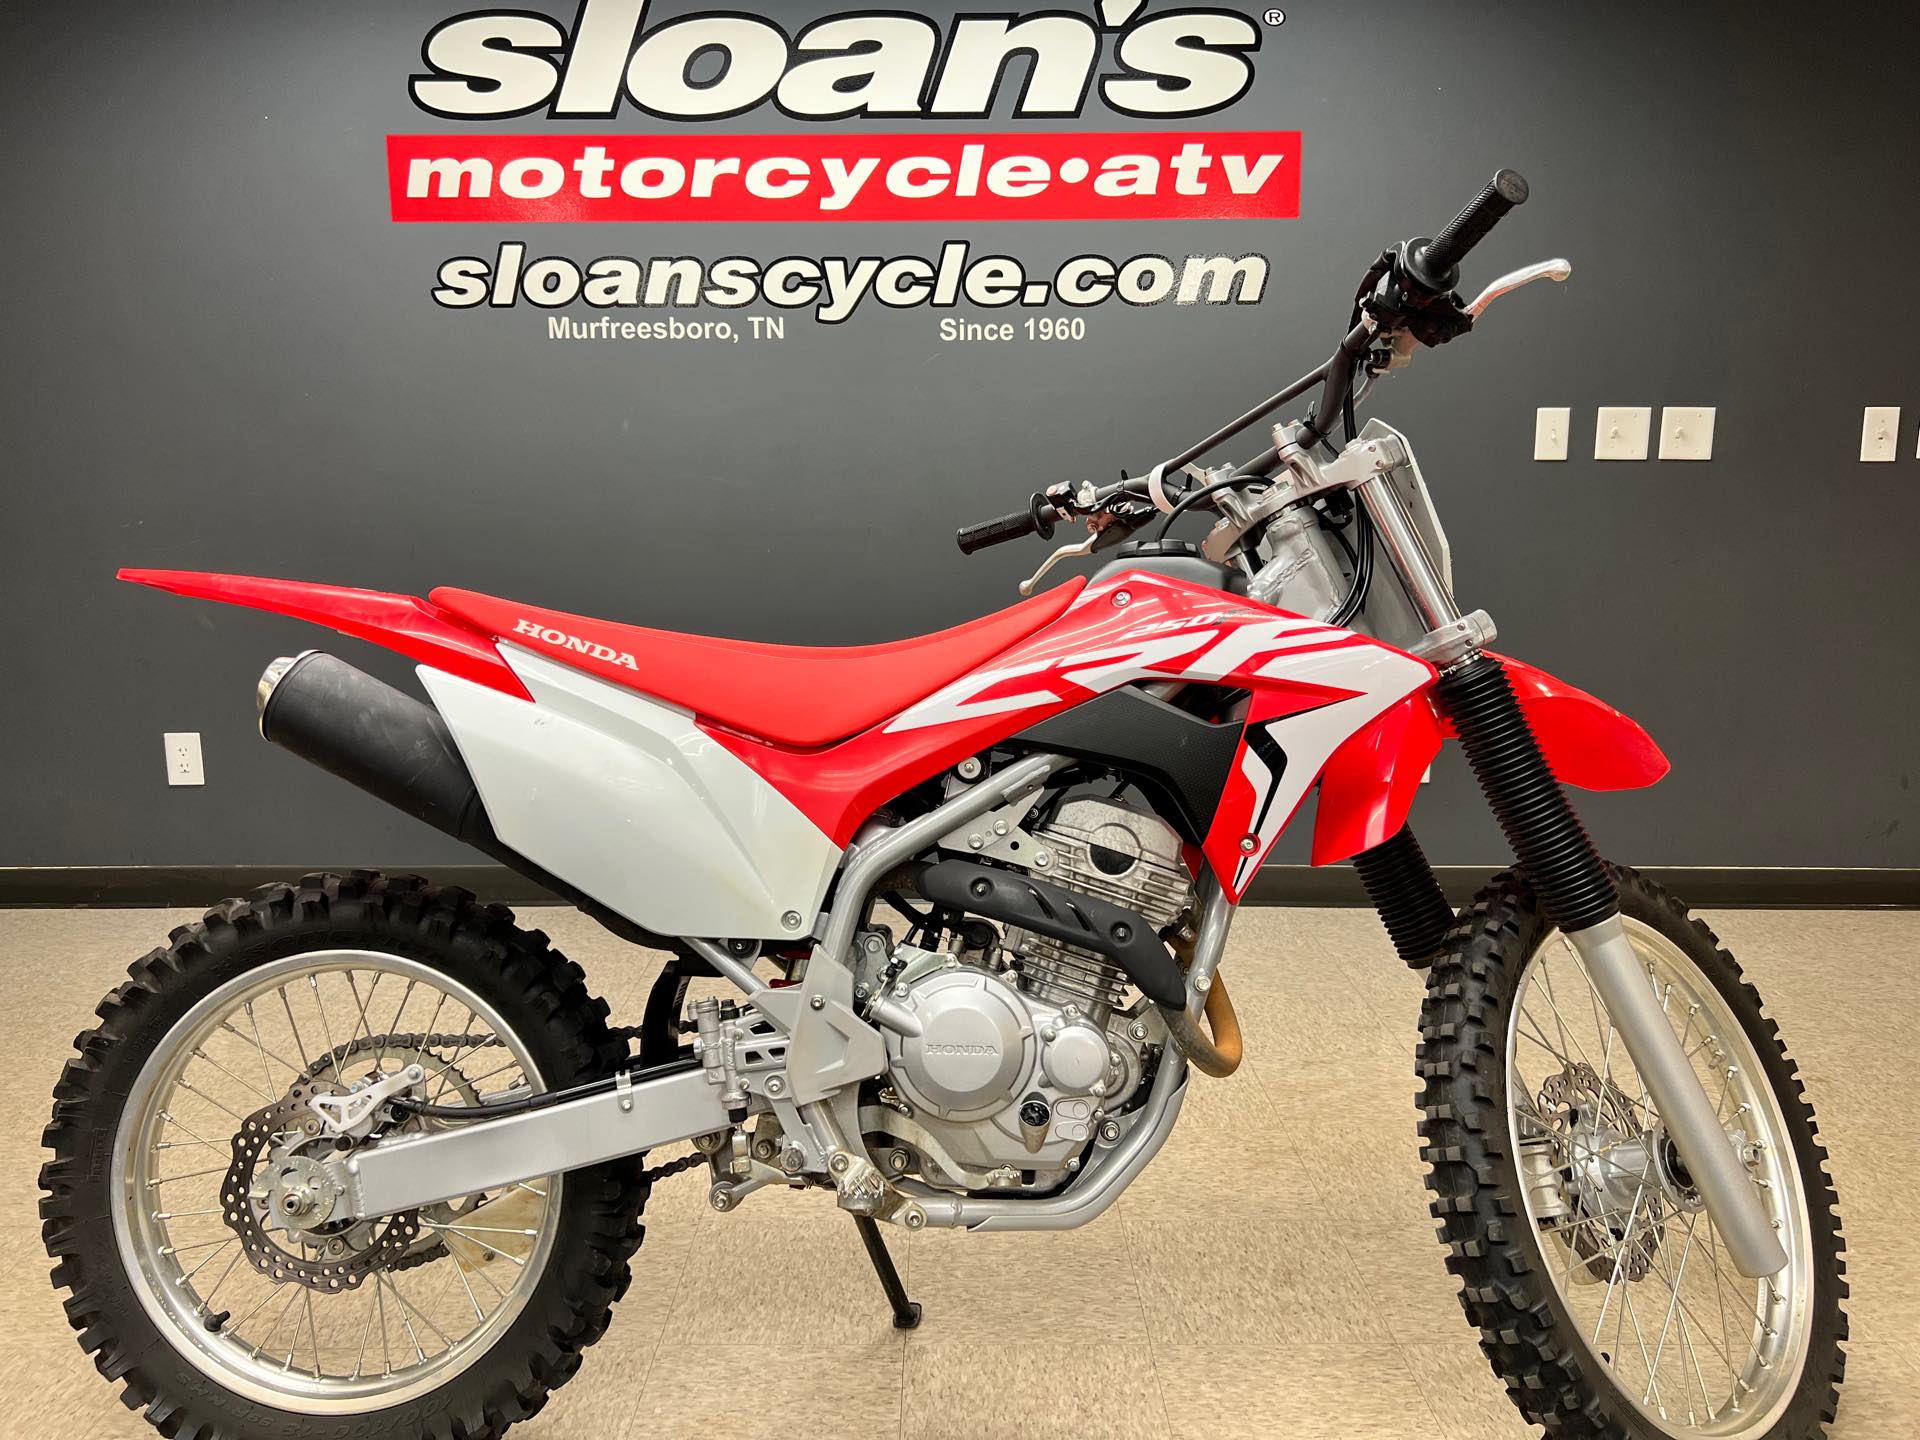 2020 Honda CRF 250F at Sloans Motorcycle ATV, Murfreesboro, TN, 37129